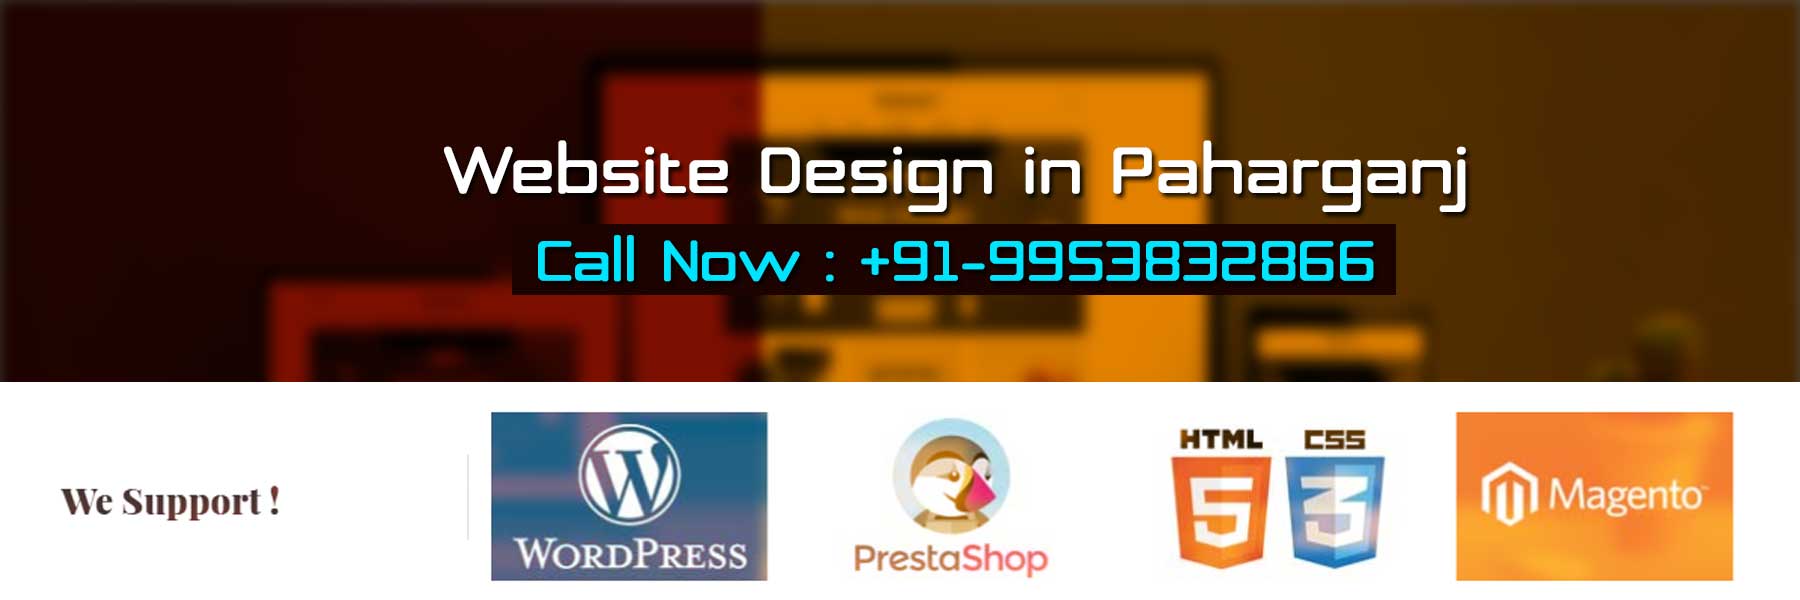 Website Design in Paharganj